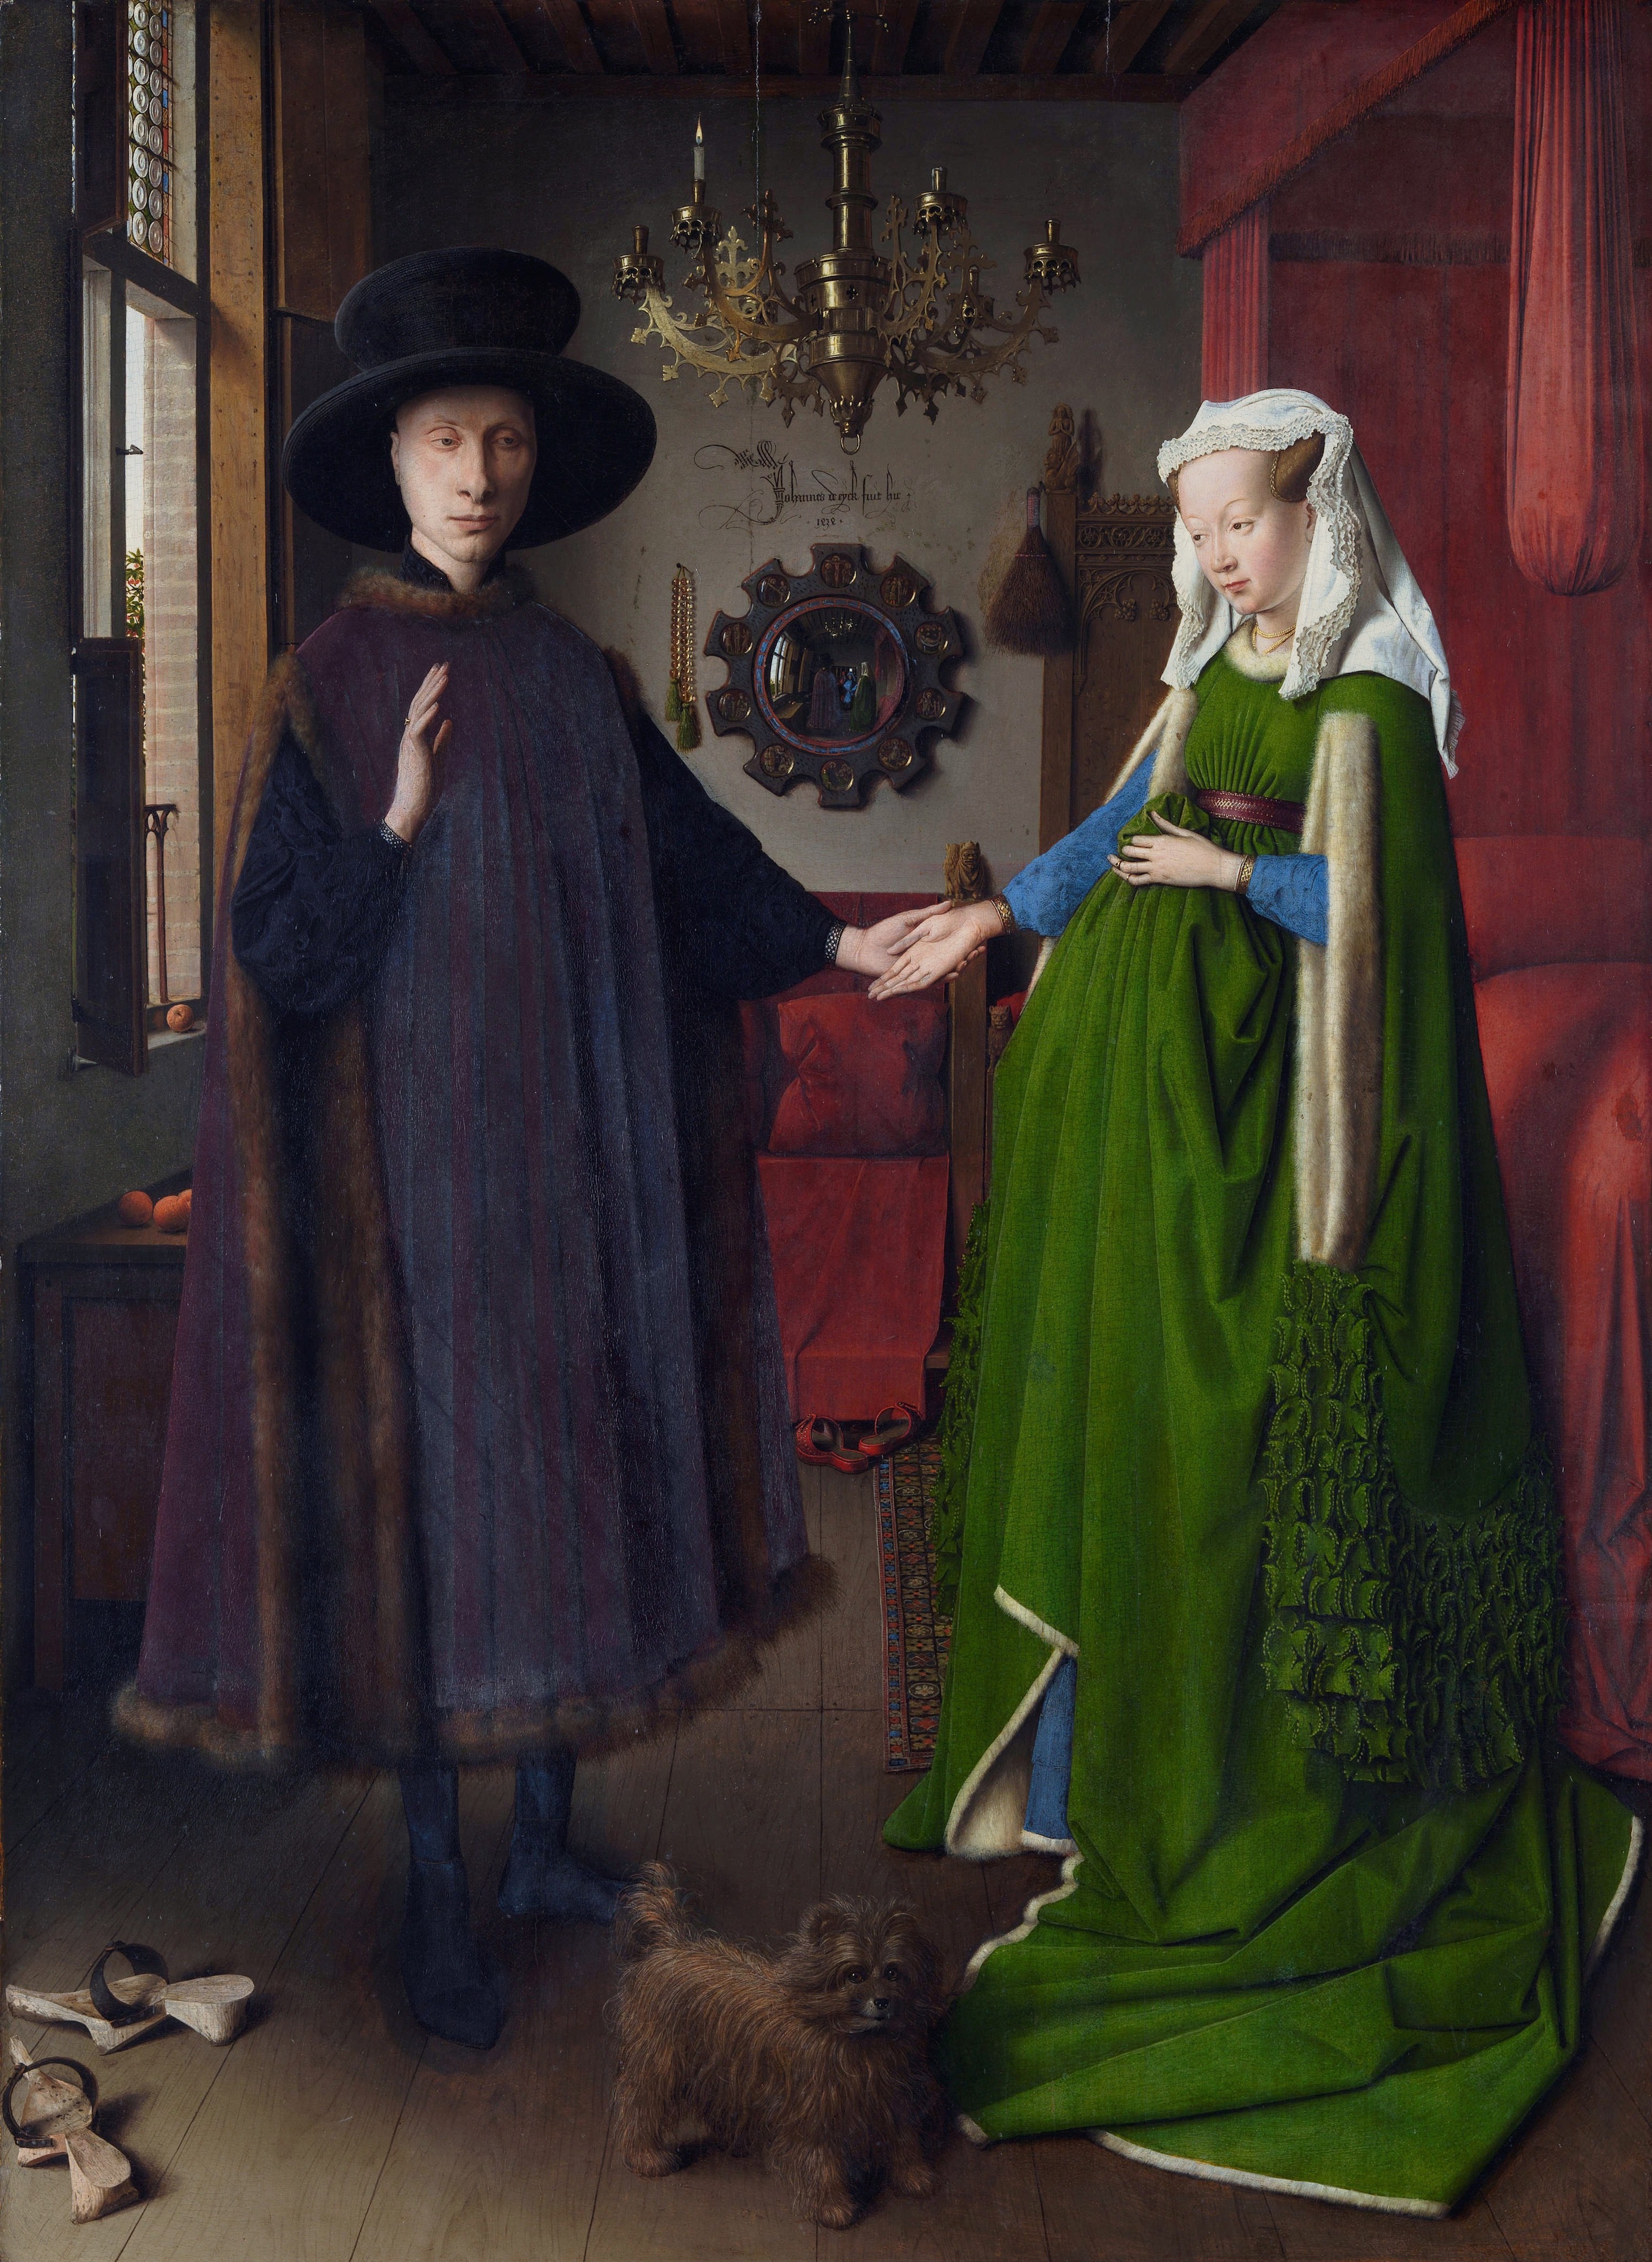 Portret małżonków Arnolfinich by Jan van Eyck - 1434 - 82 × 59.5 cm 